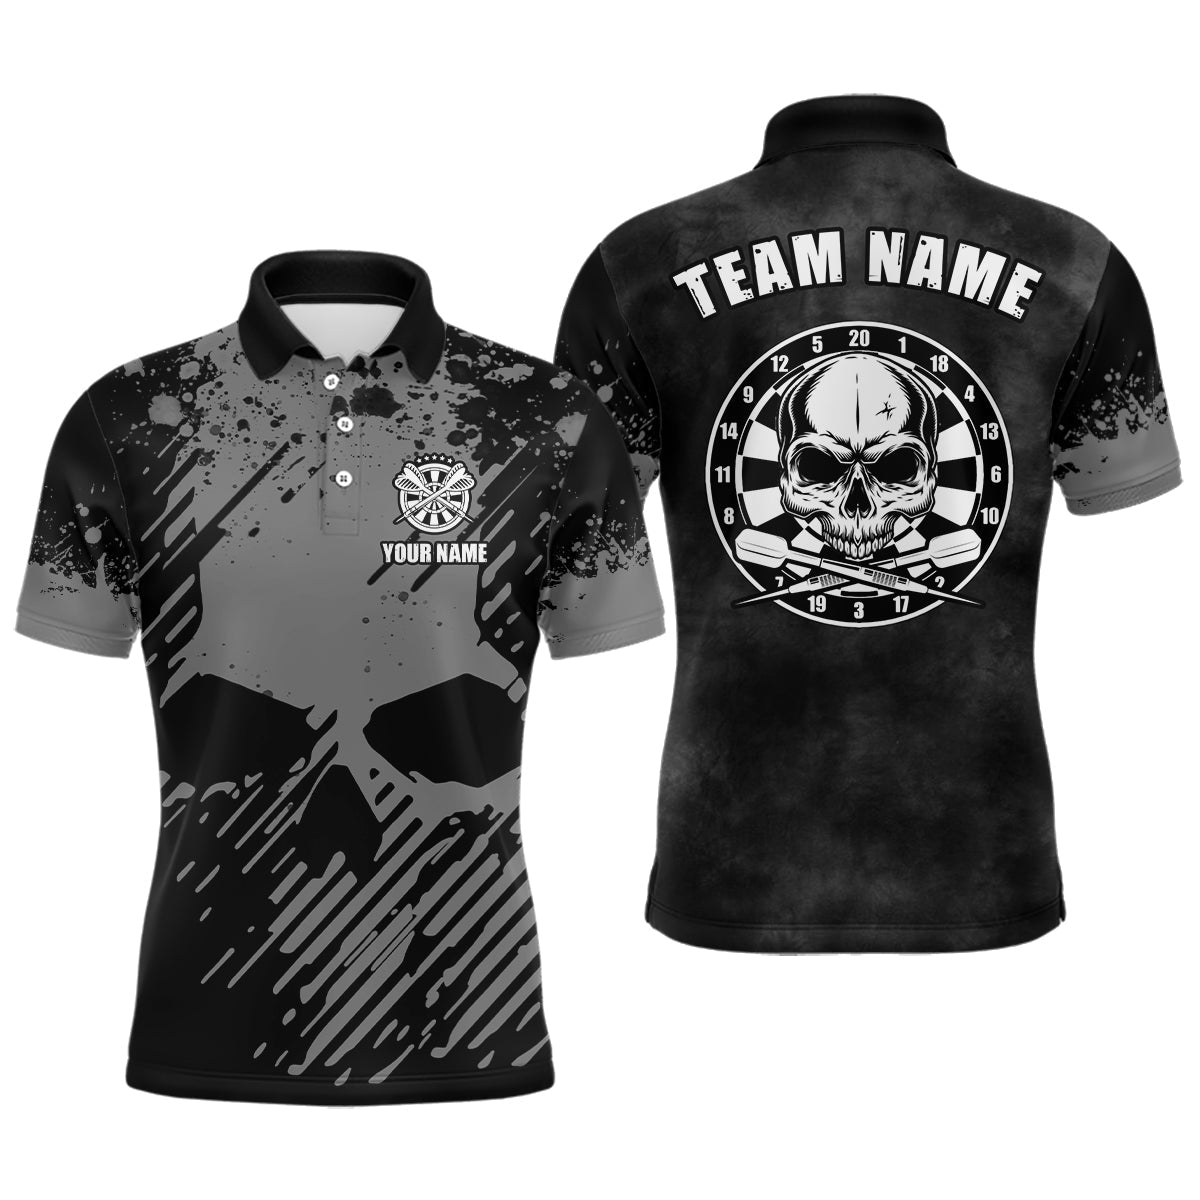 Personalisiertes Herren Darts Polo Shirt in Schwarz-Grau mit Grunge-Effekt, Totenkopf Darts Shirt für Männer, Dart Trikot S67 - Climcat